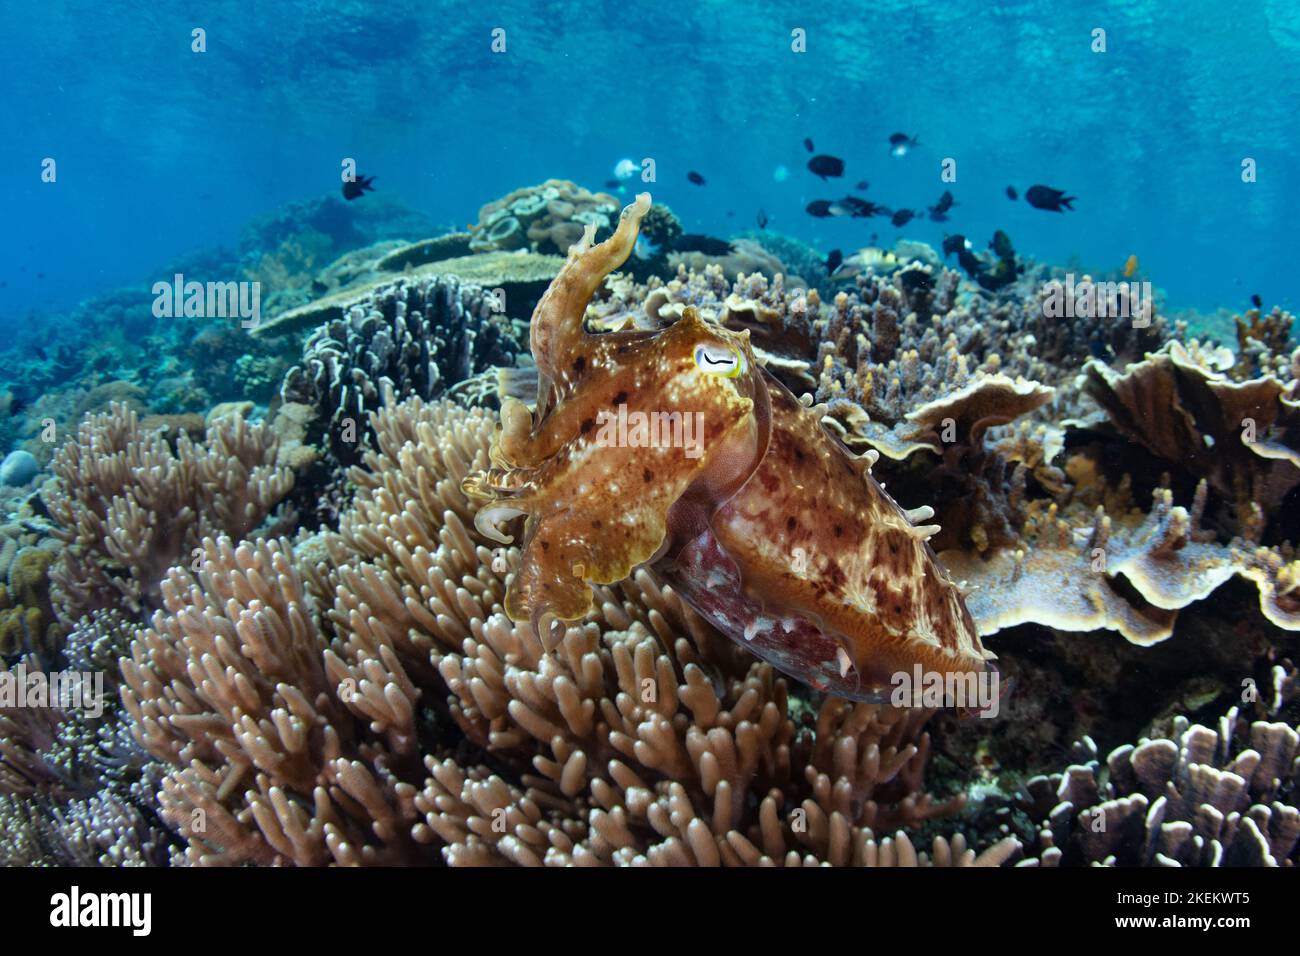 Ein Broadclub-Tintenfisch, Sepia latimanus, schwebt über einem exquisiten Korallenriff in Komodo, Indonesien. Tintenfische sind Meister der Tarnung. Stockfoto